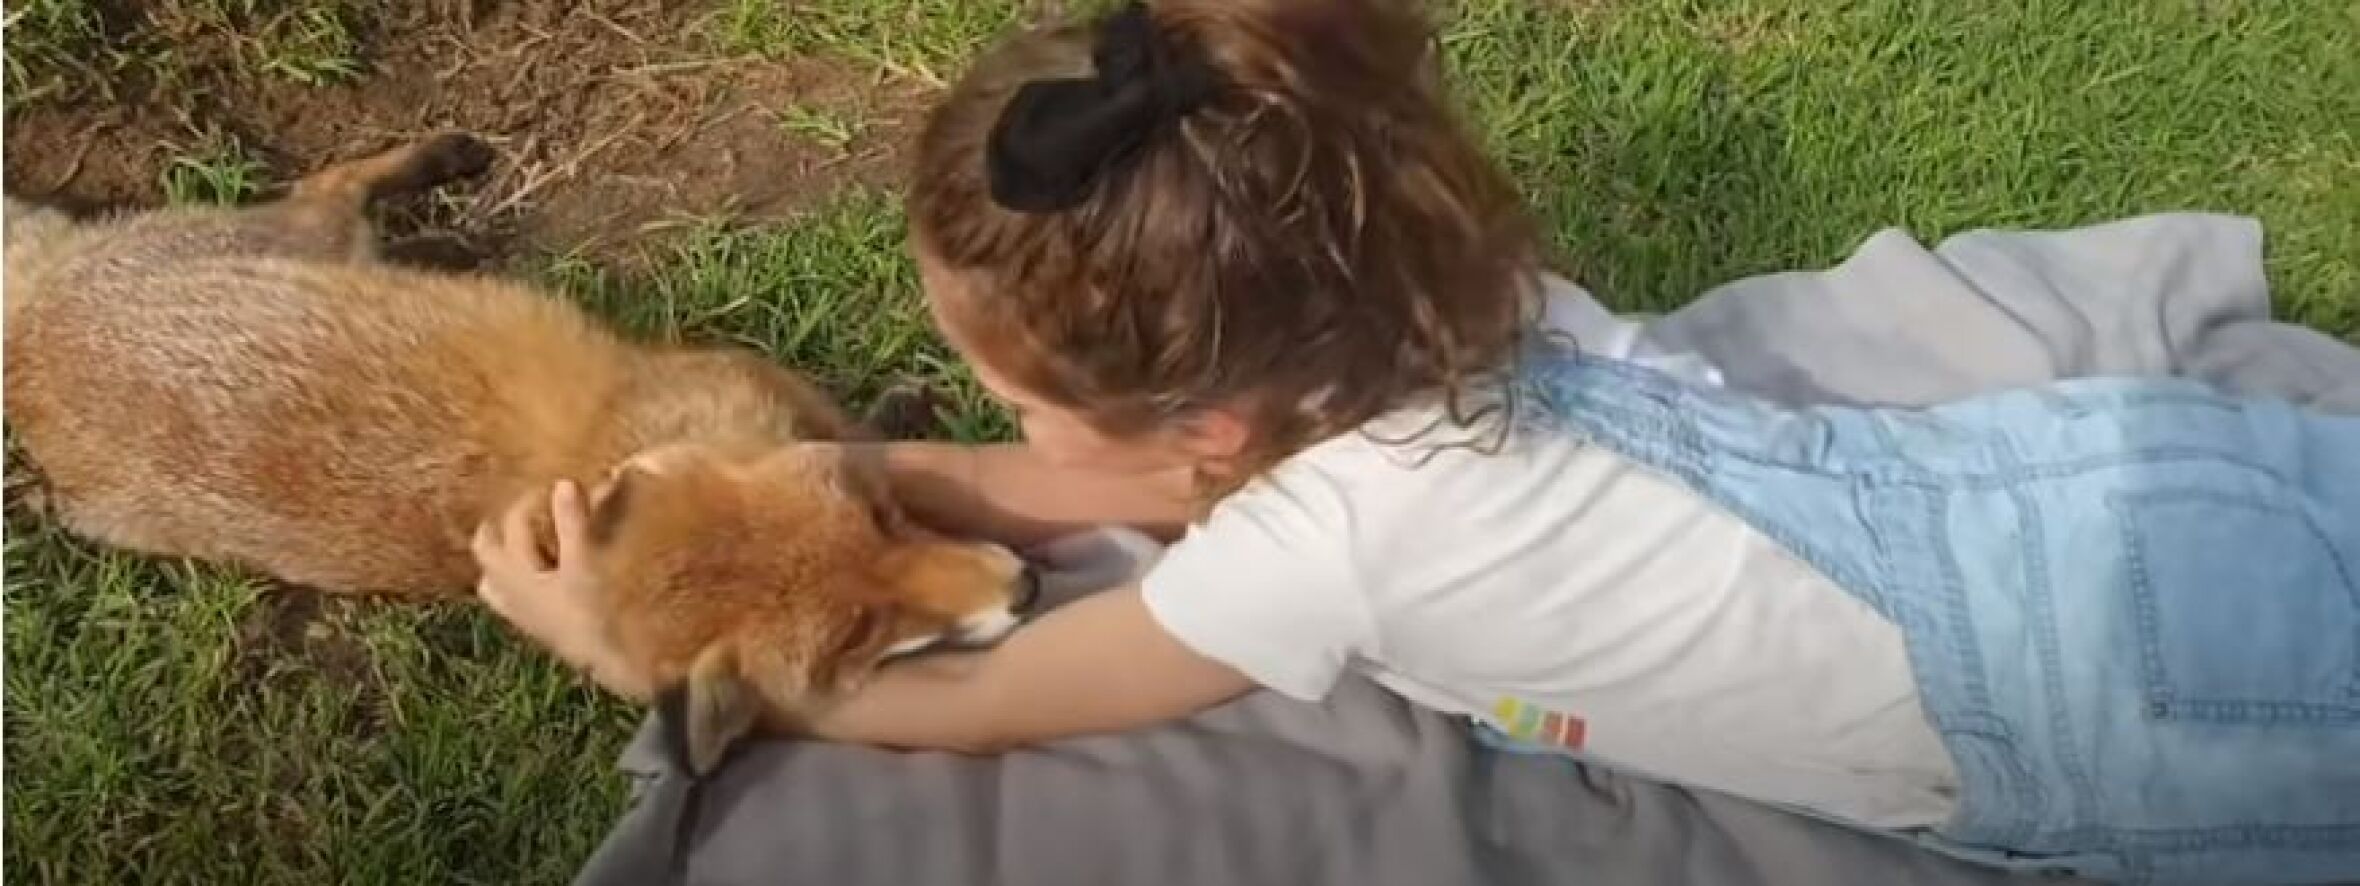 Menina cria ligação com raposa resgatada (com vídeo)